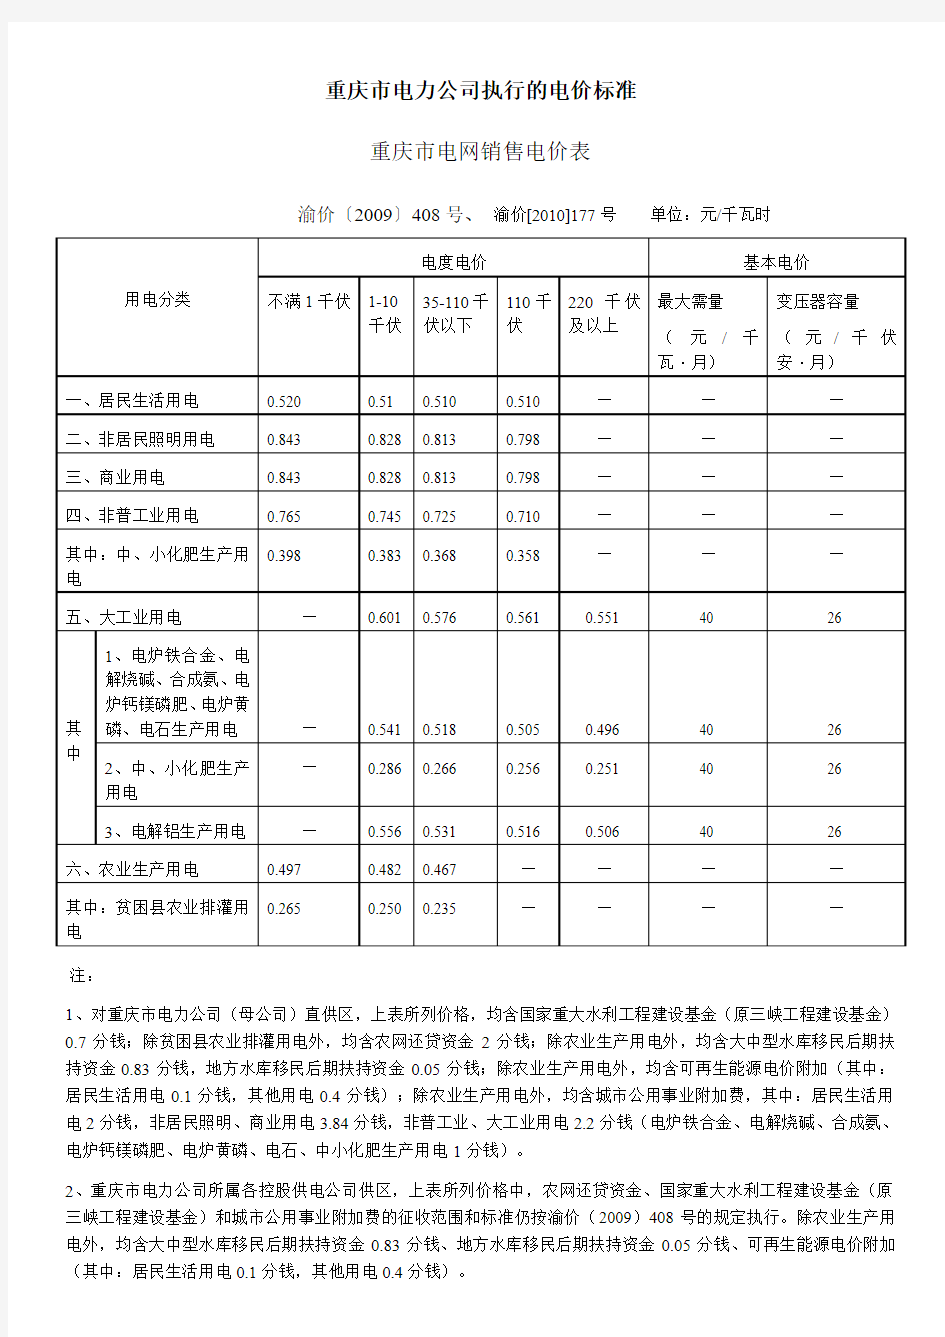 重庆市电力公司执行的电价标准